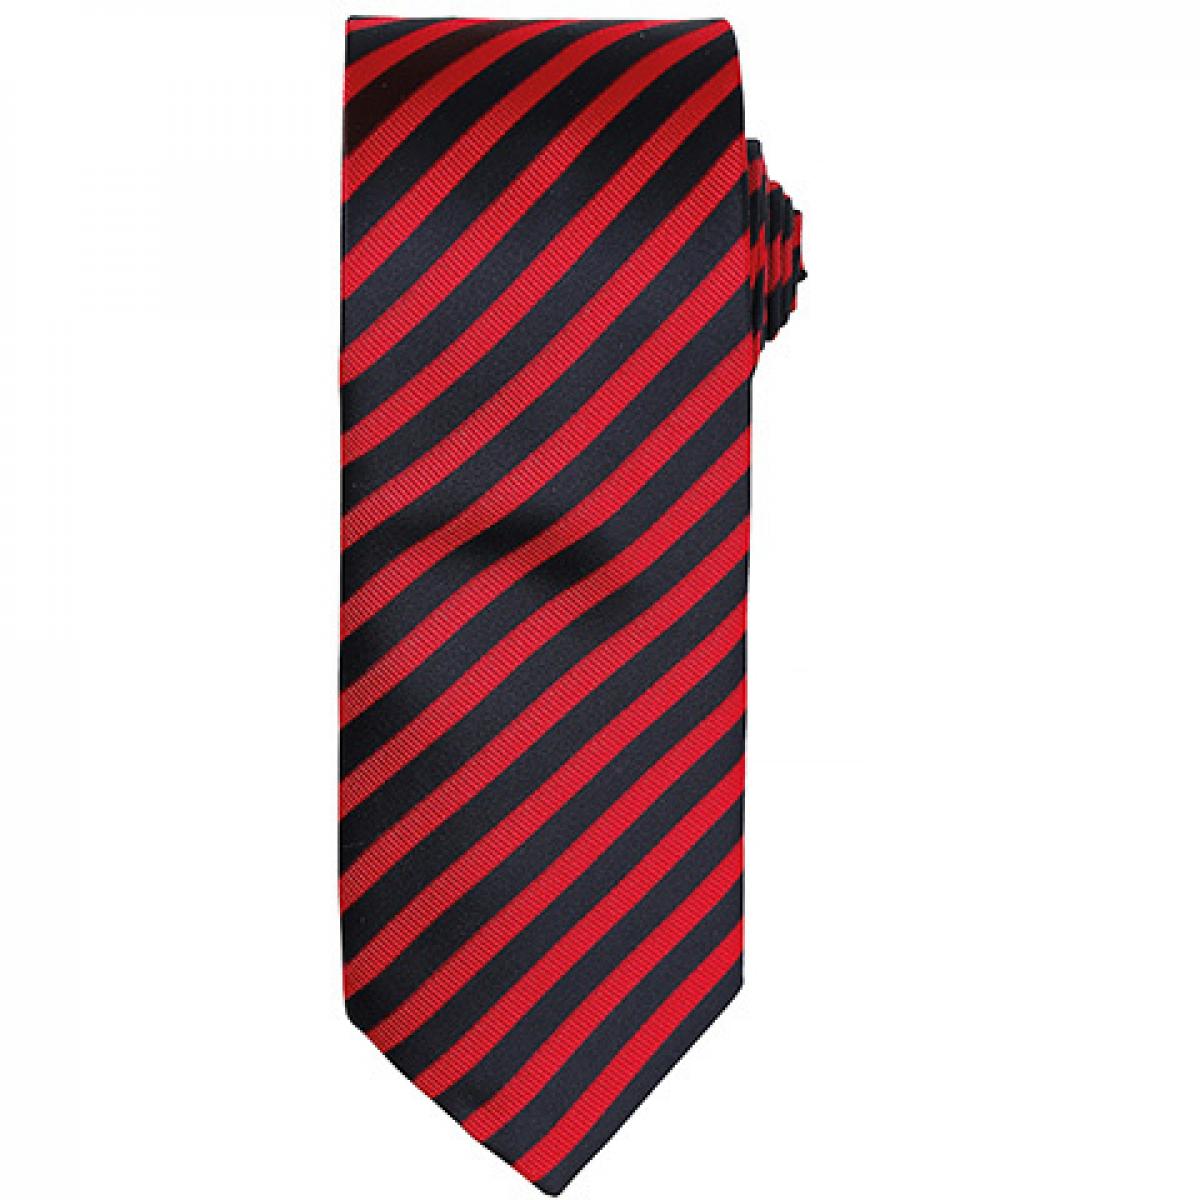 Hersteller: Premier Workwear Herstellernummer: PR782 Artikelbezeichnung: Double Stripe Tie / Breite 3" / 7,5 cm / Länge 57" / 144 cm Farbe: Red/Black